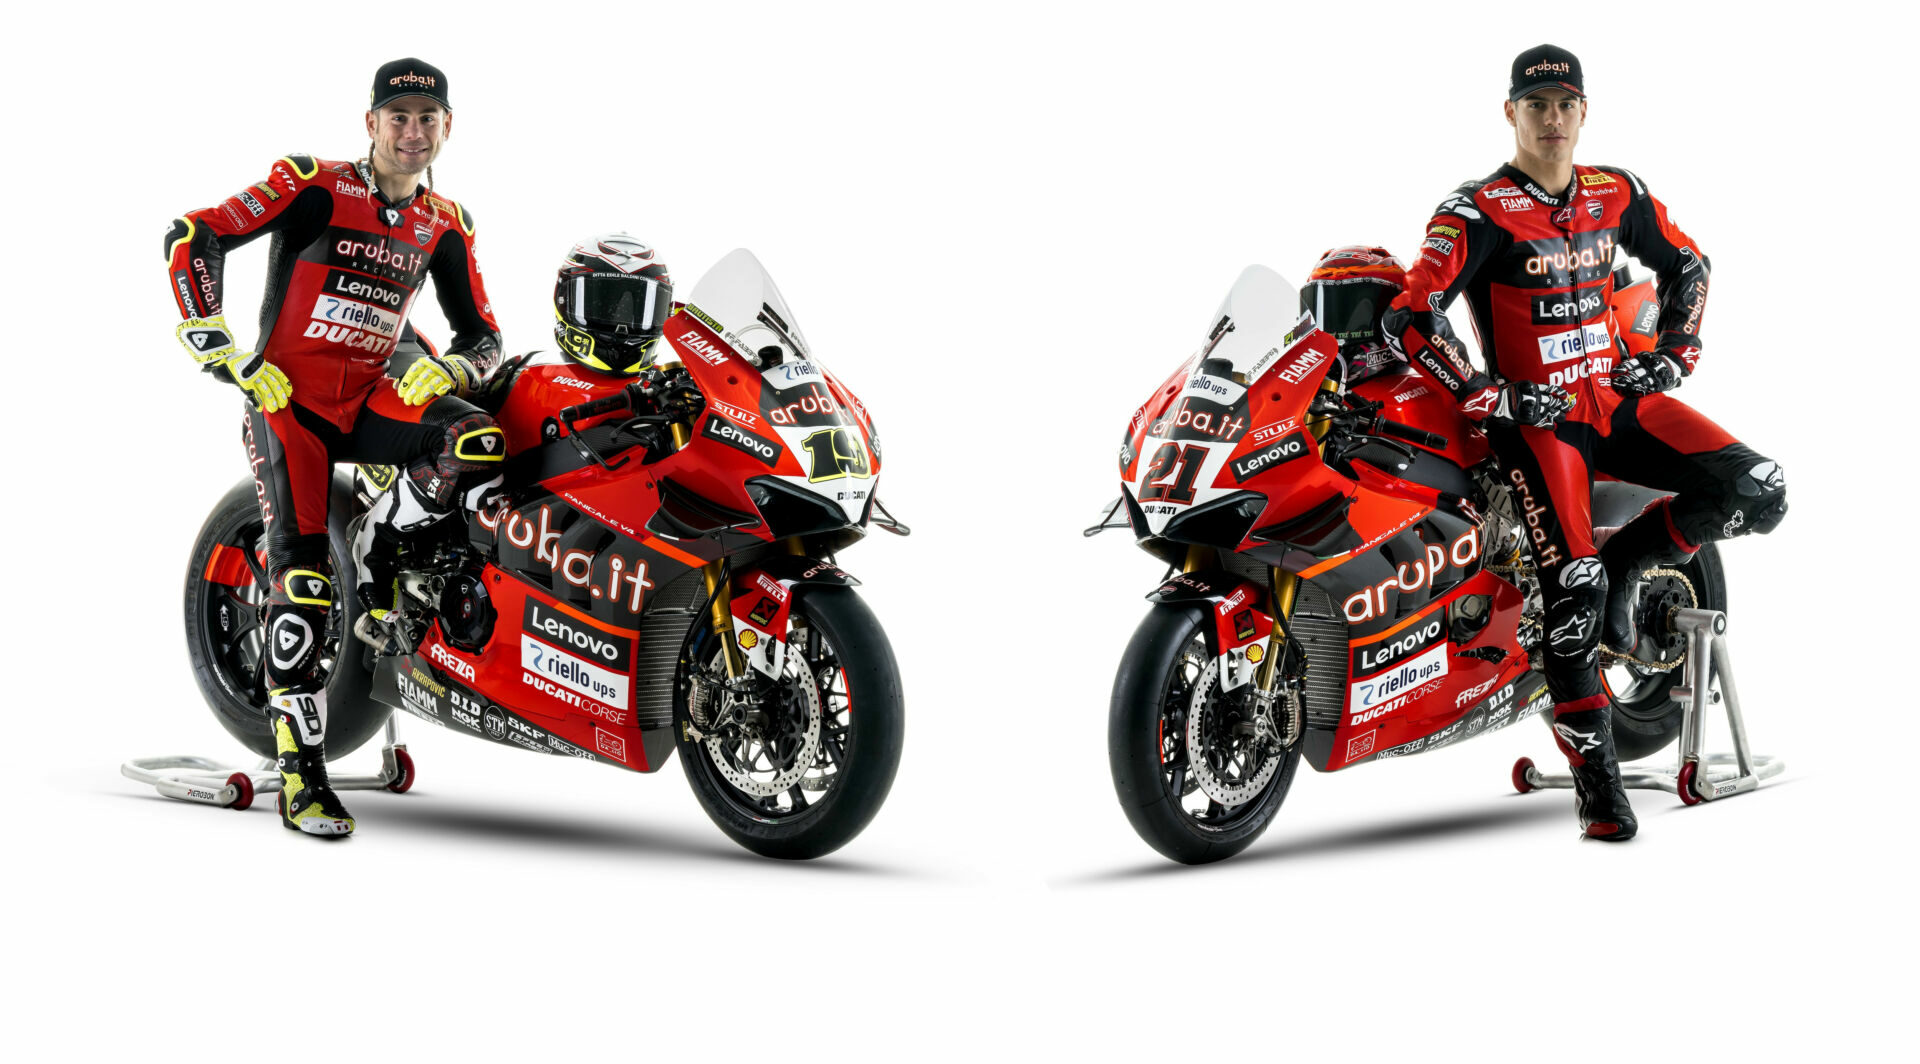 Aruba.it Racing Ducati's Alvaro Bautista (left) and Michael Ruben Rinaldi (right). Photo courtesy Ducati.